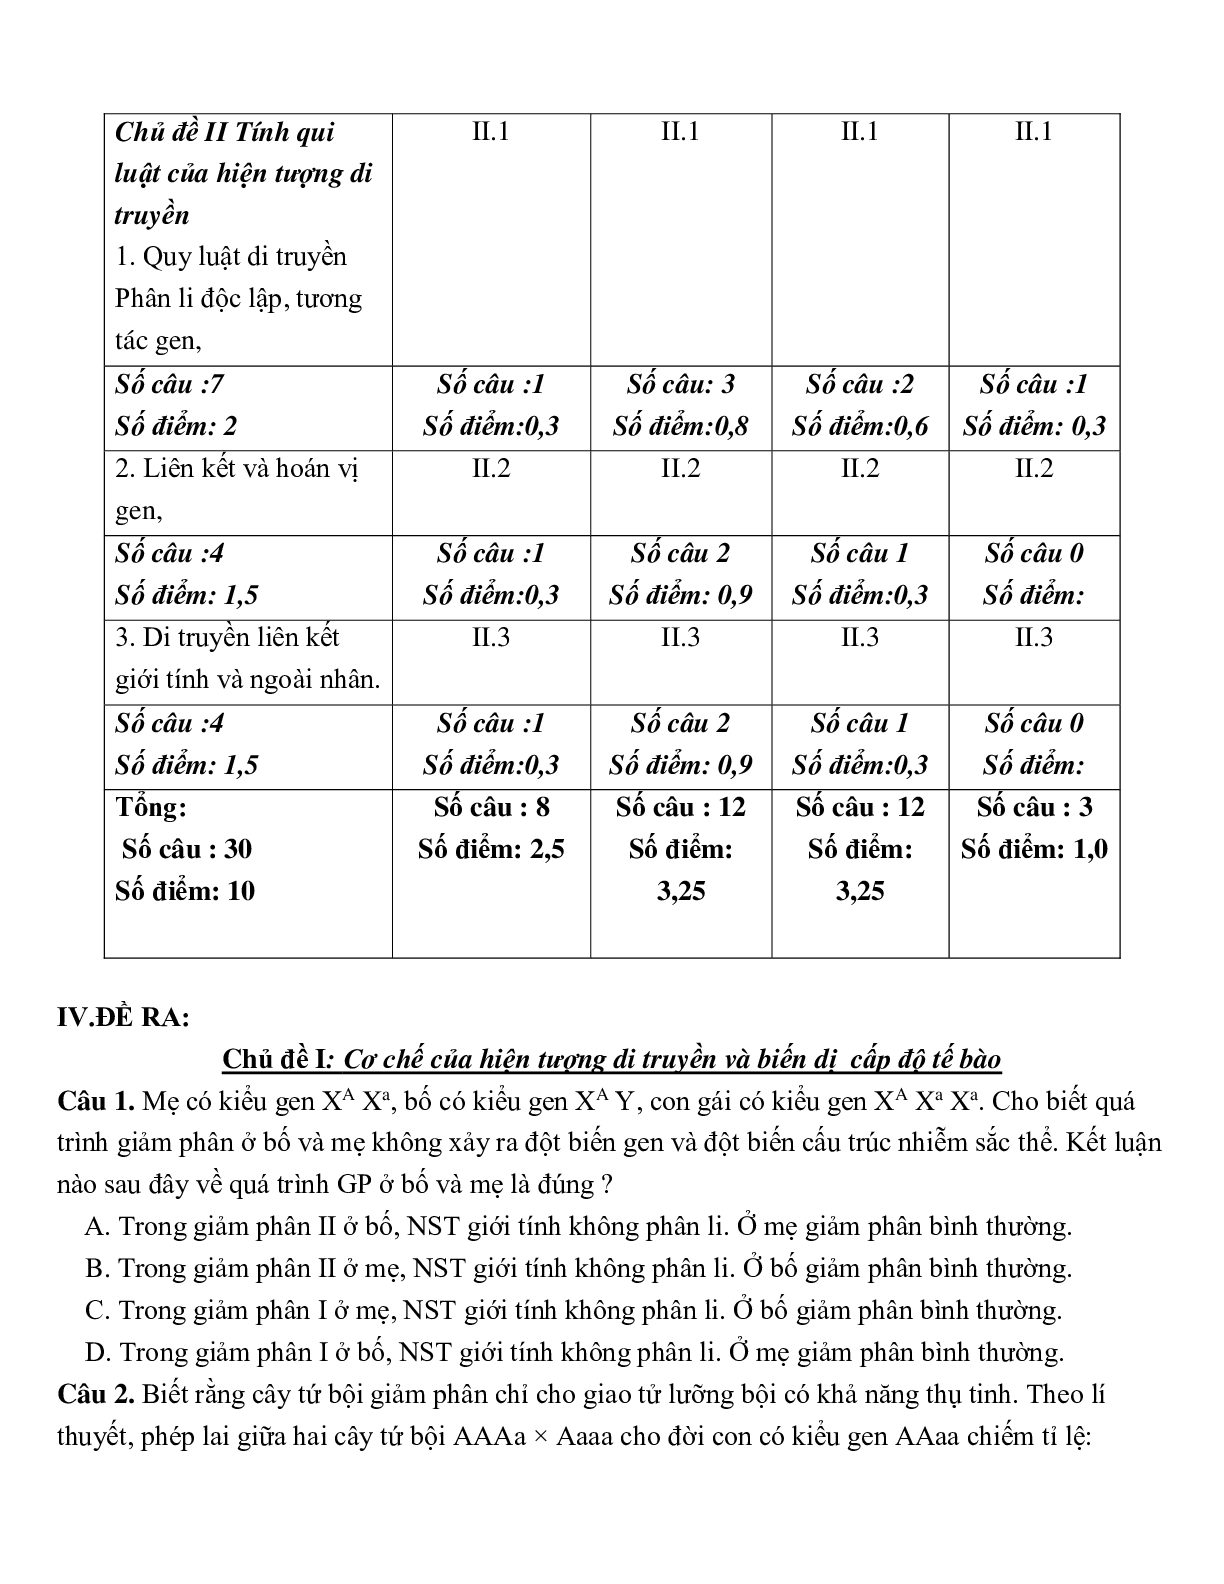 Giáo án Sinh học 12 Ôn tập giữa học kì 1 mới nhất - CV5512 (trang 2)